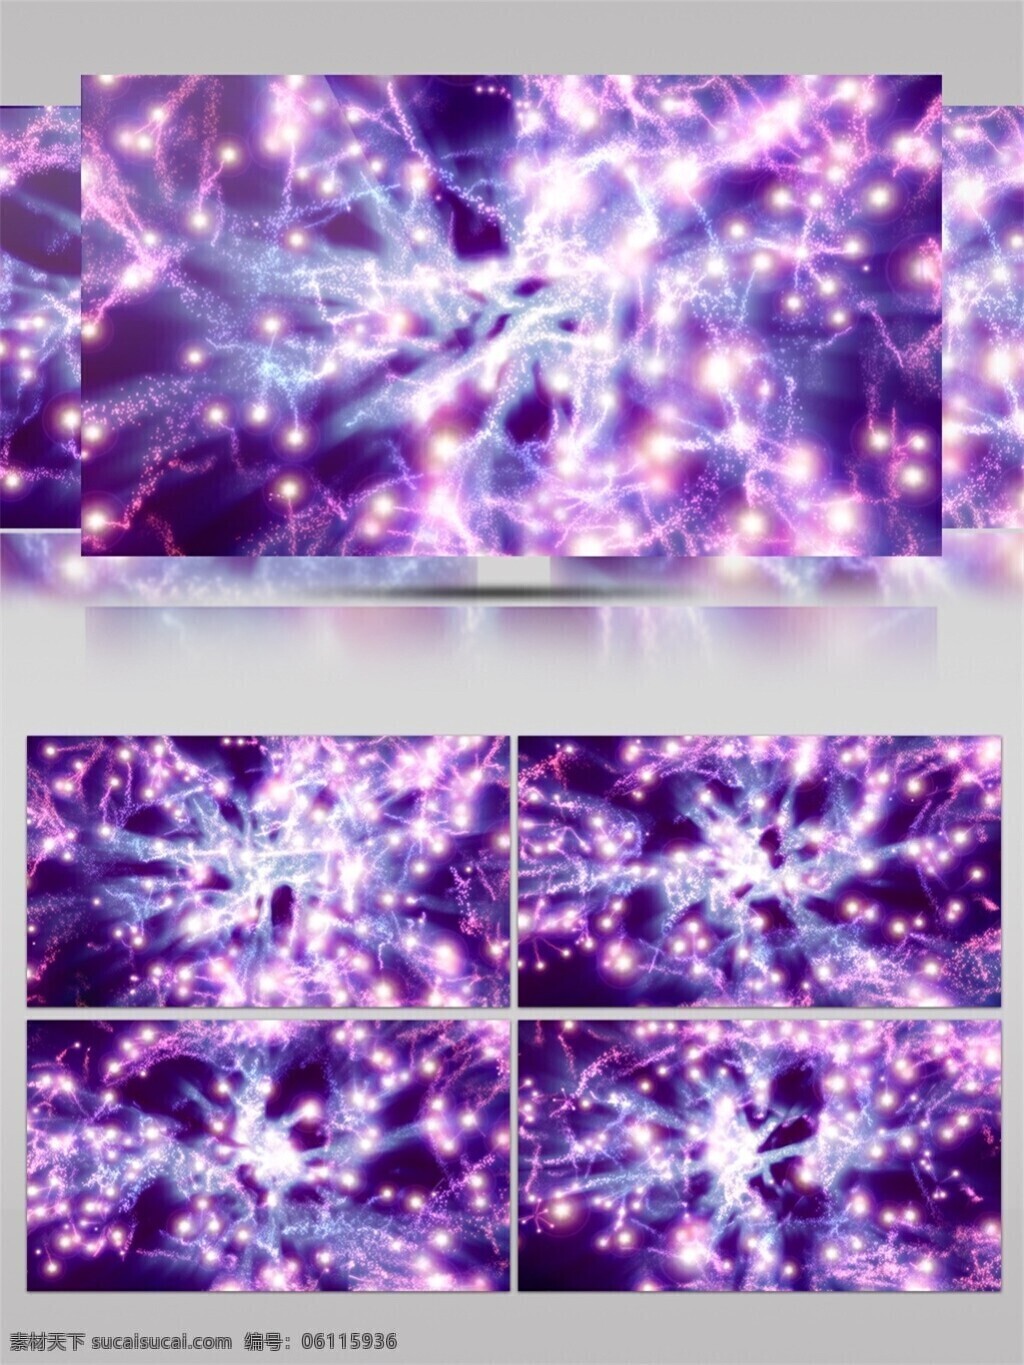 梦幻 紫色 小 彩灯 高清 视频 动态视频素材 光感粒子 梦幻紫色 视频素材 唯美浪漫